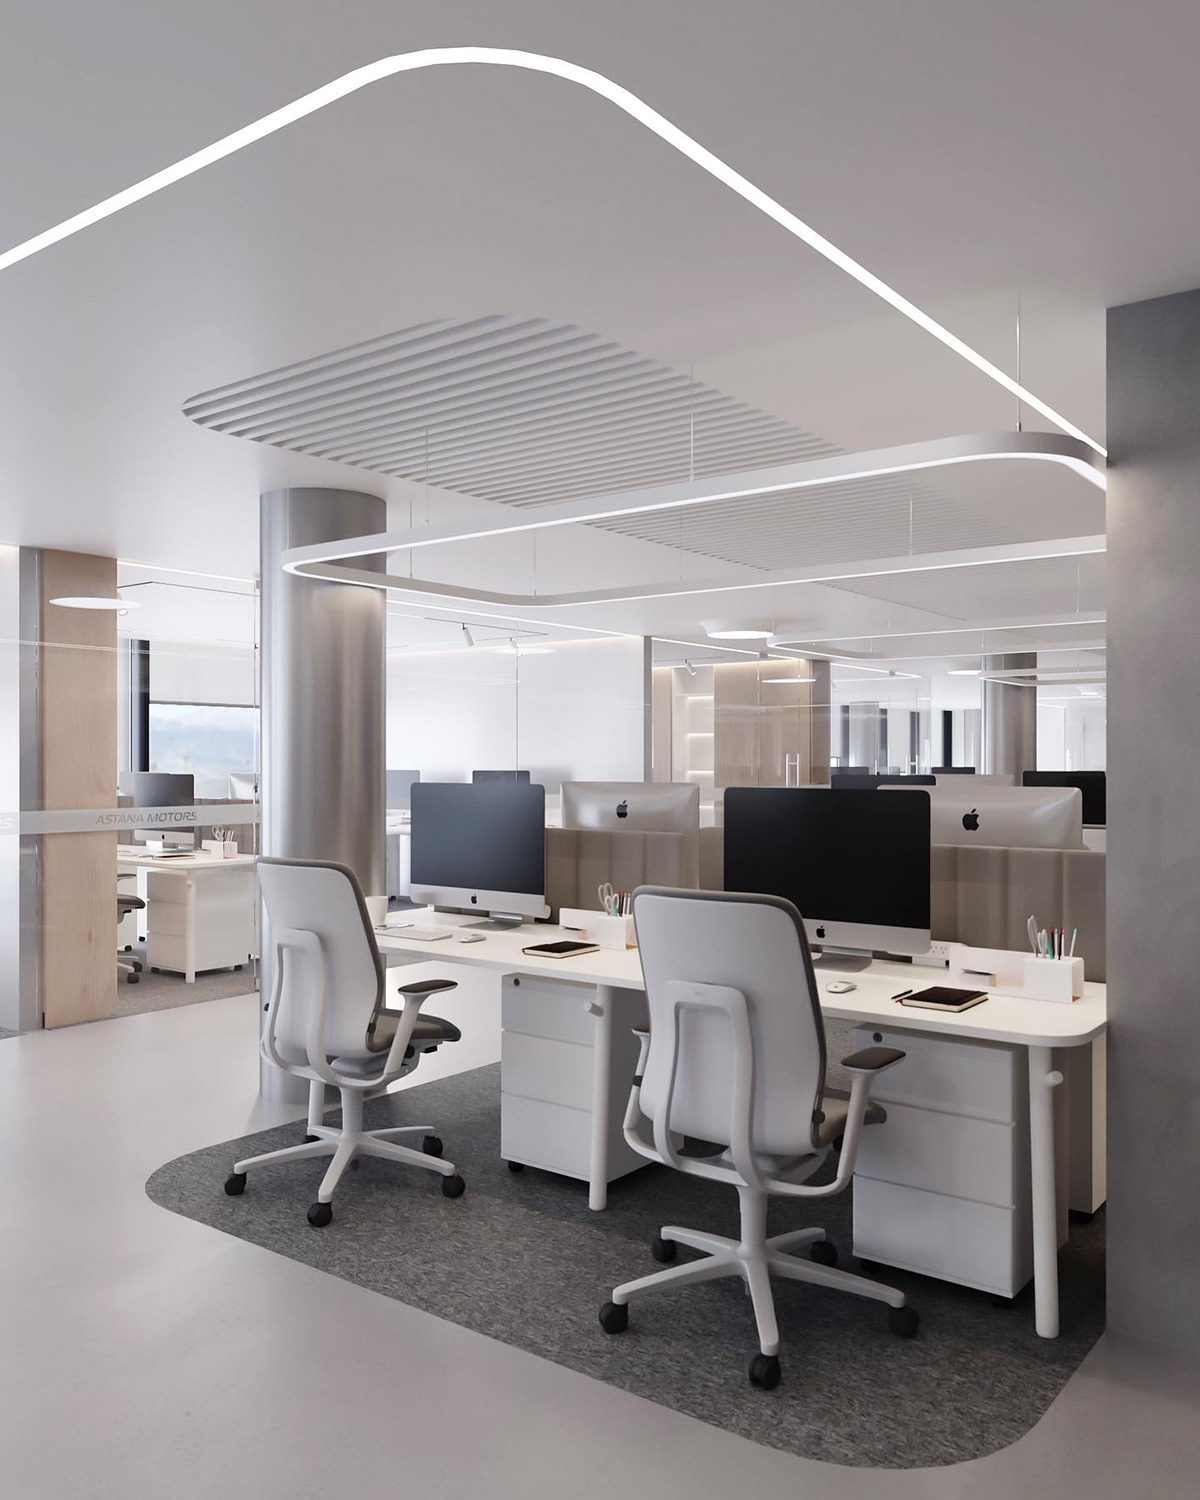 design Office architecture Render visualization interior design  3ds max corona officedesign interiorarchitecture